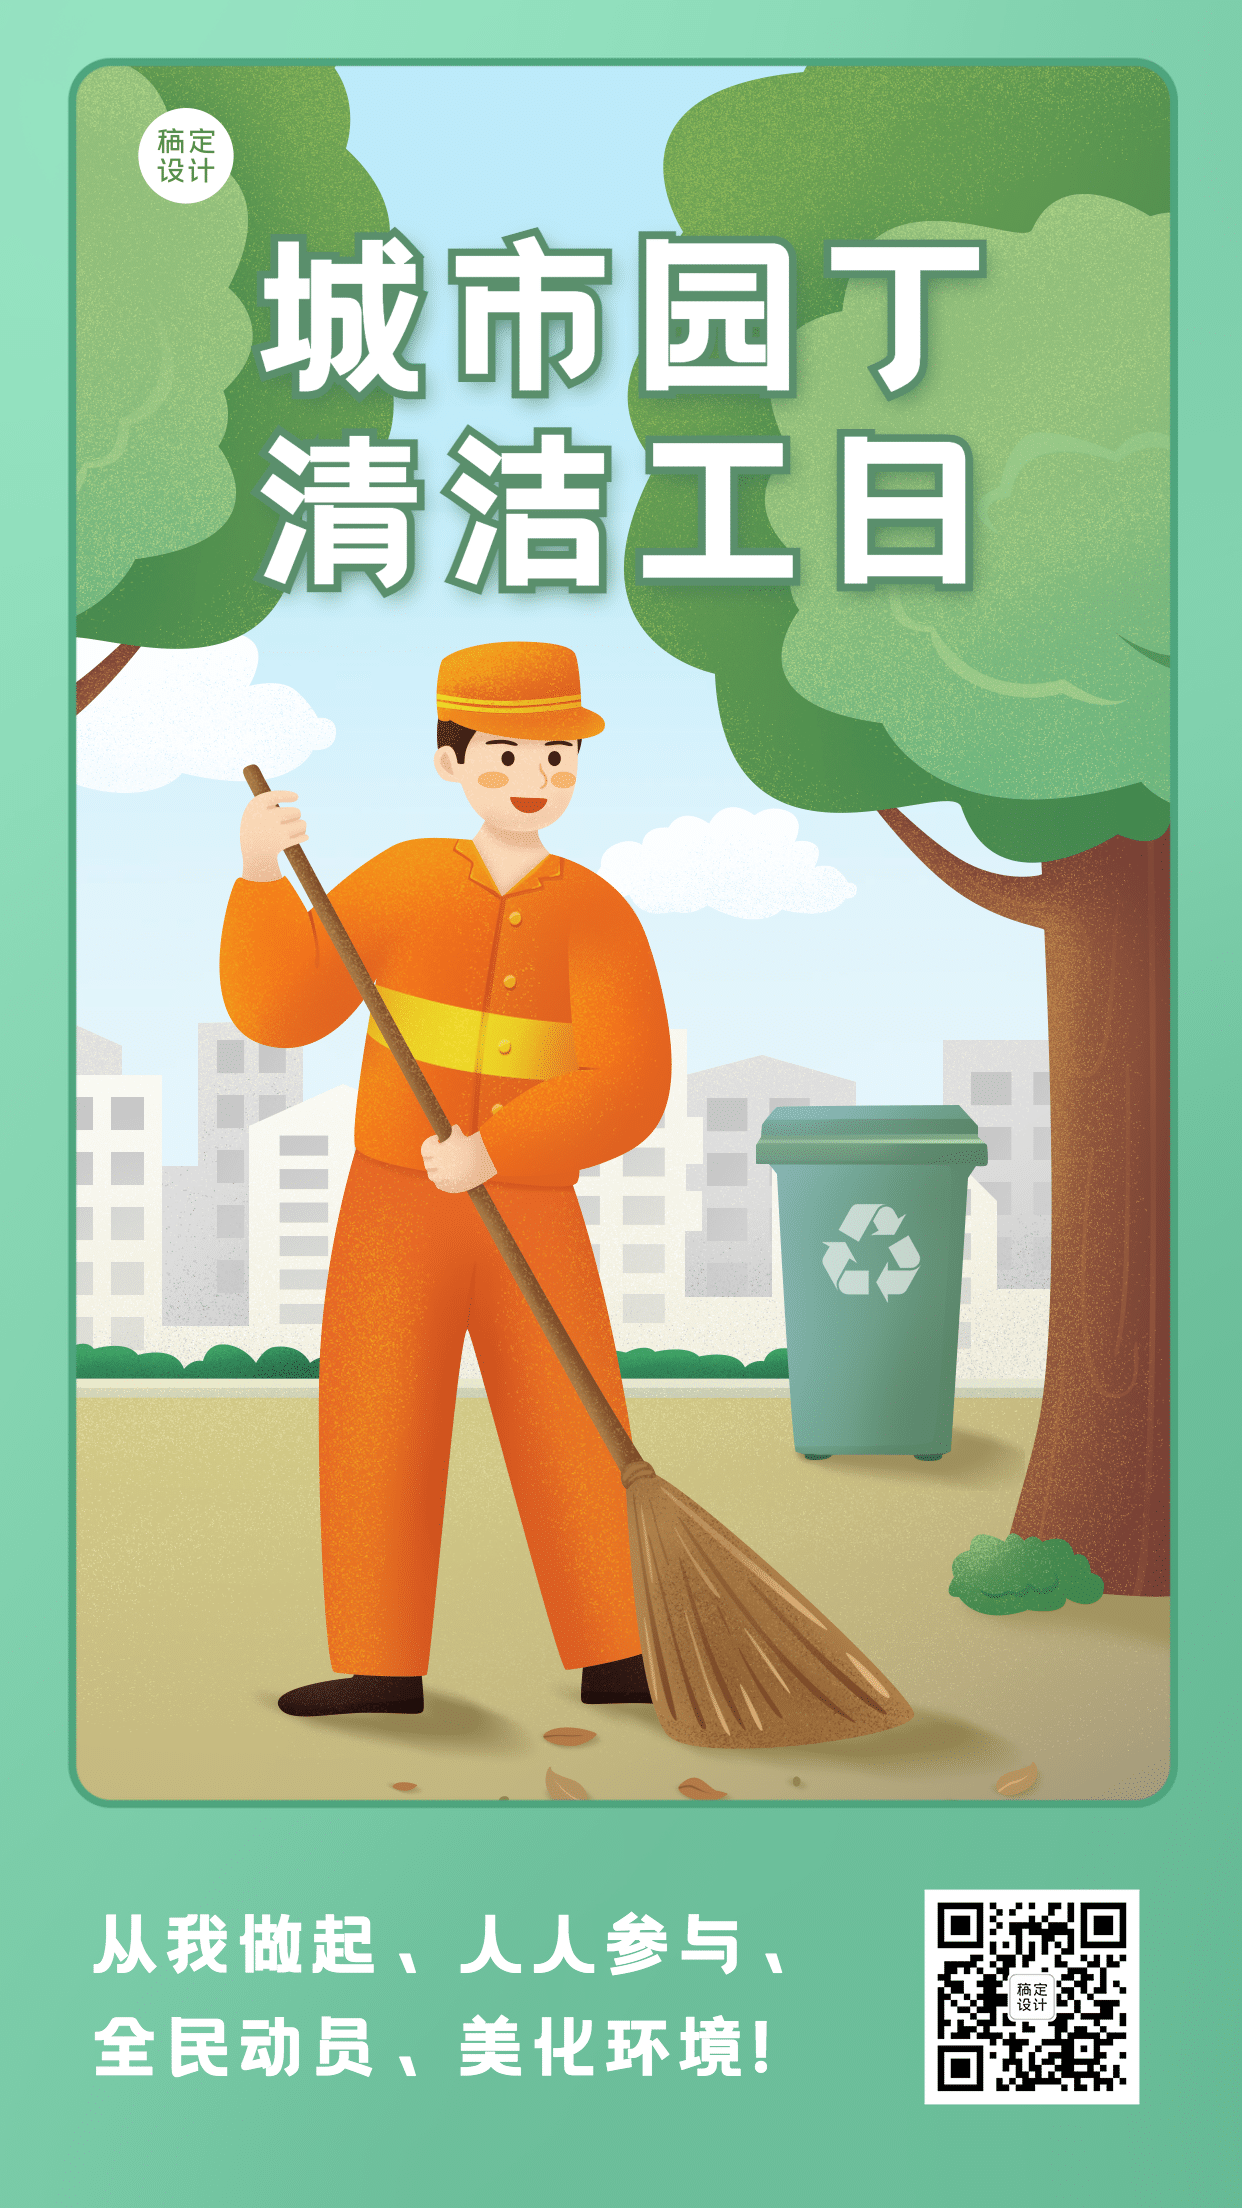 清洁工日城市环保公益宣传手绘手机海报